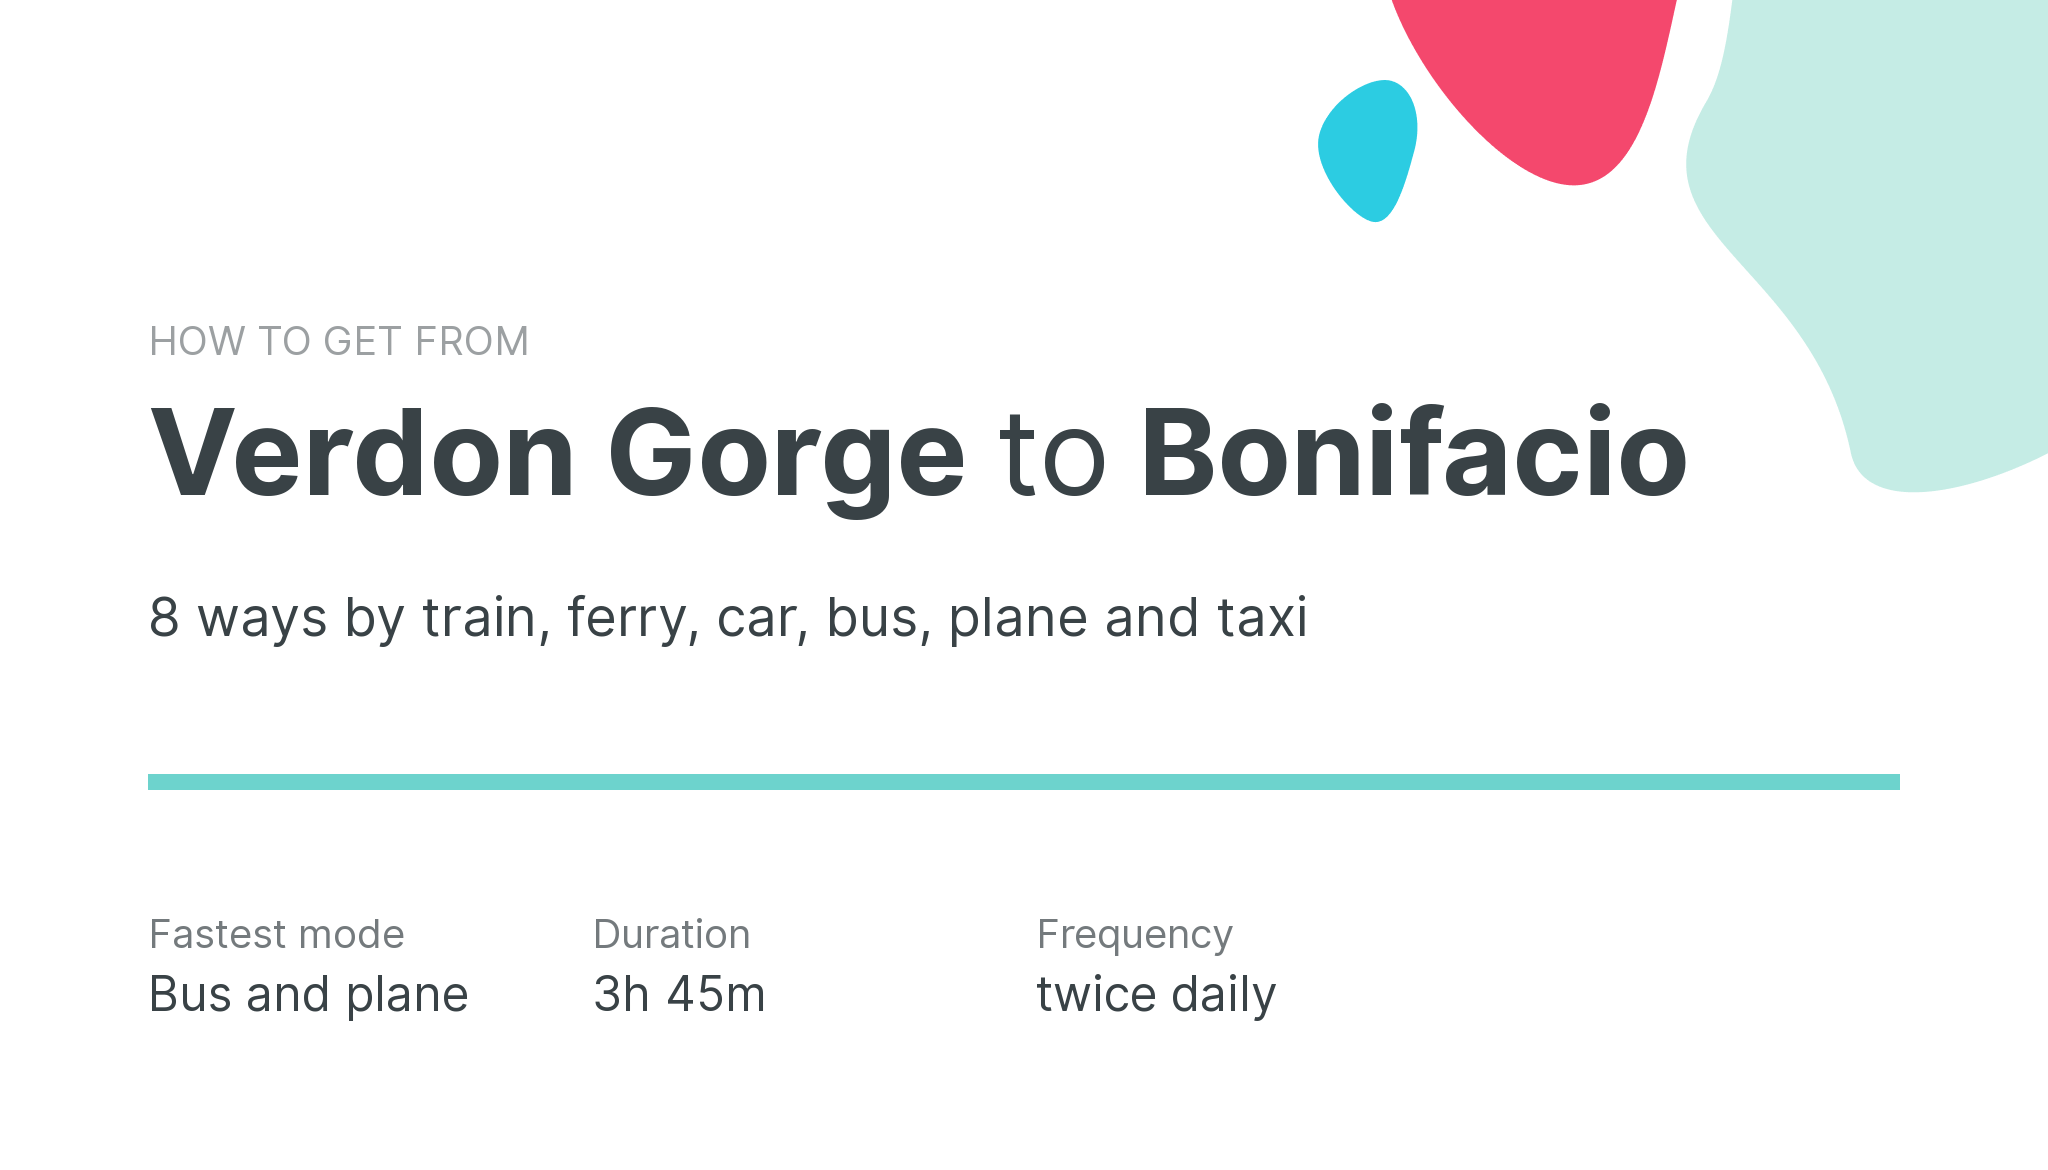 How do I get from Verdon Gorge to Bonifacio